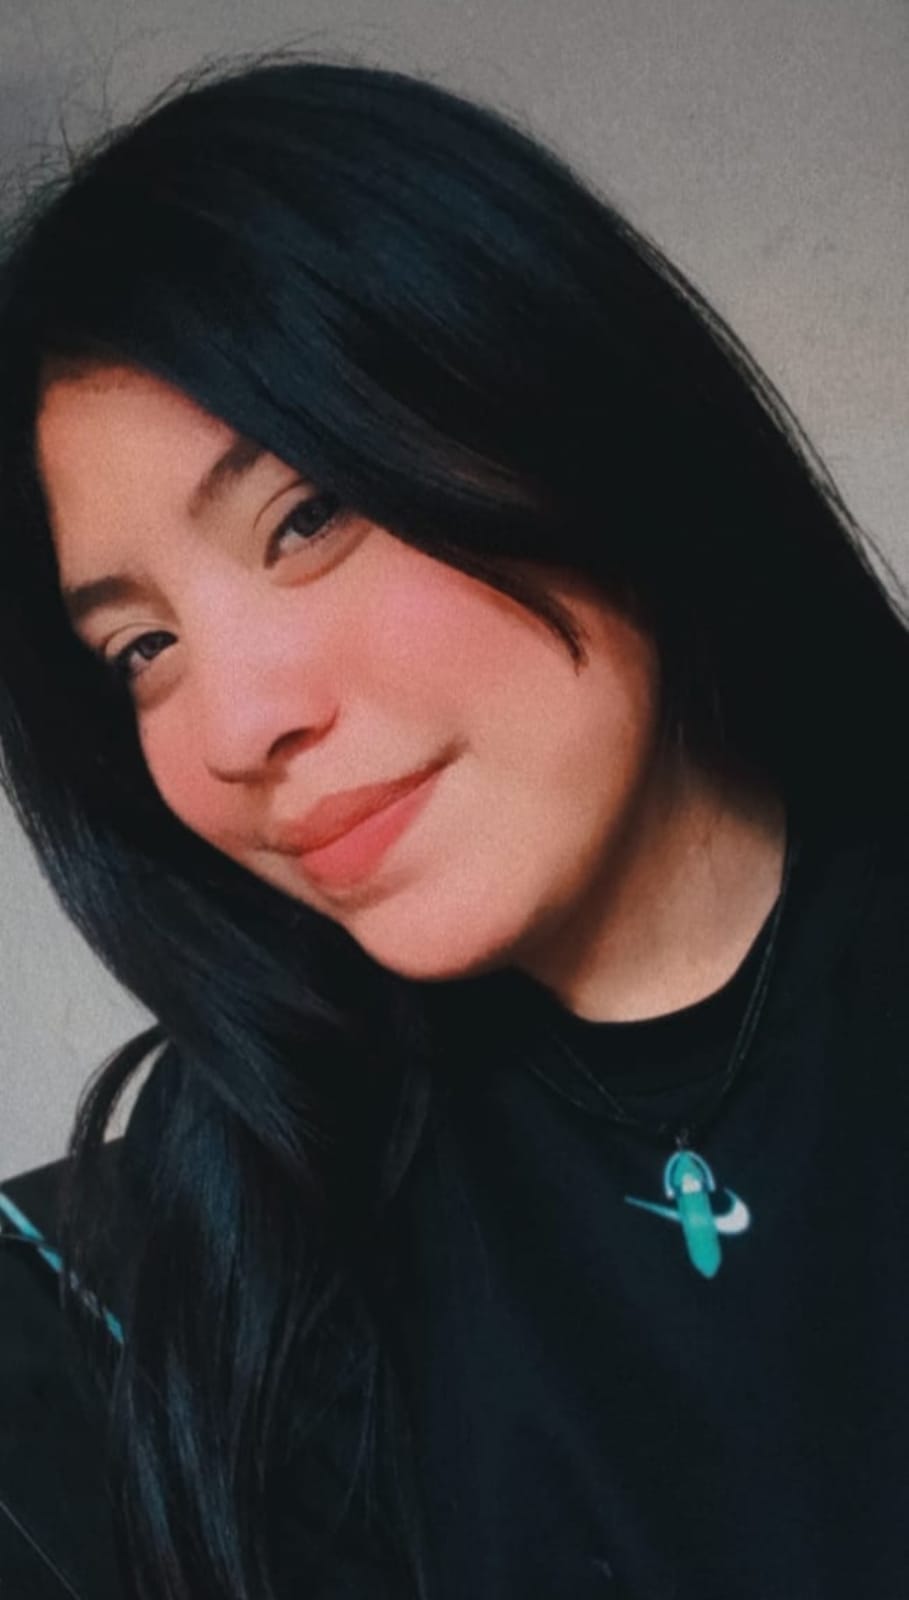 Buscan a adolescente desaparecida en Pátzcuaro